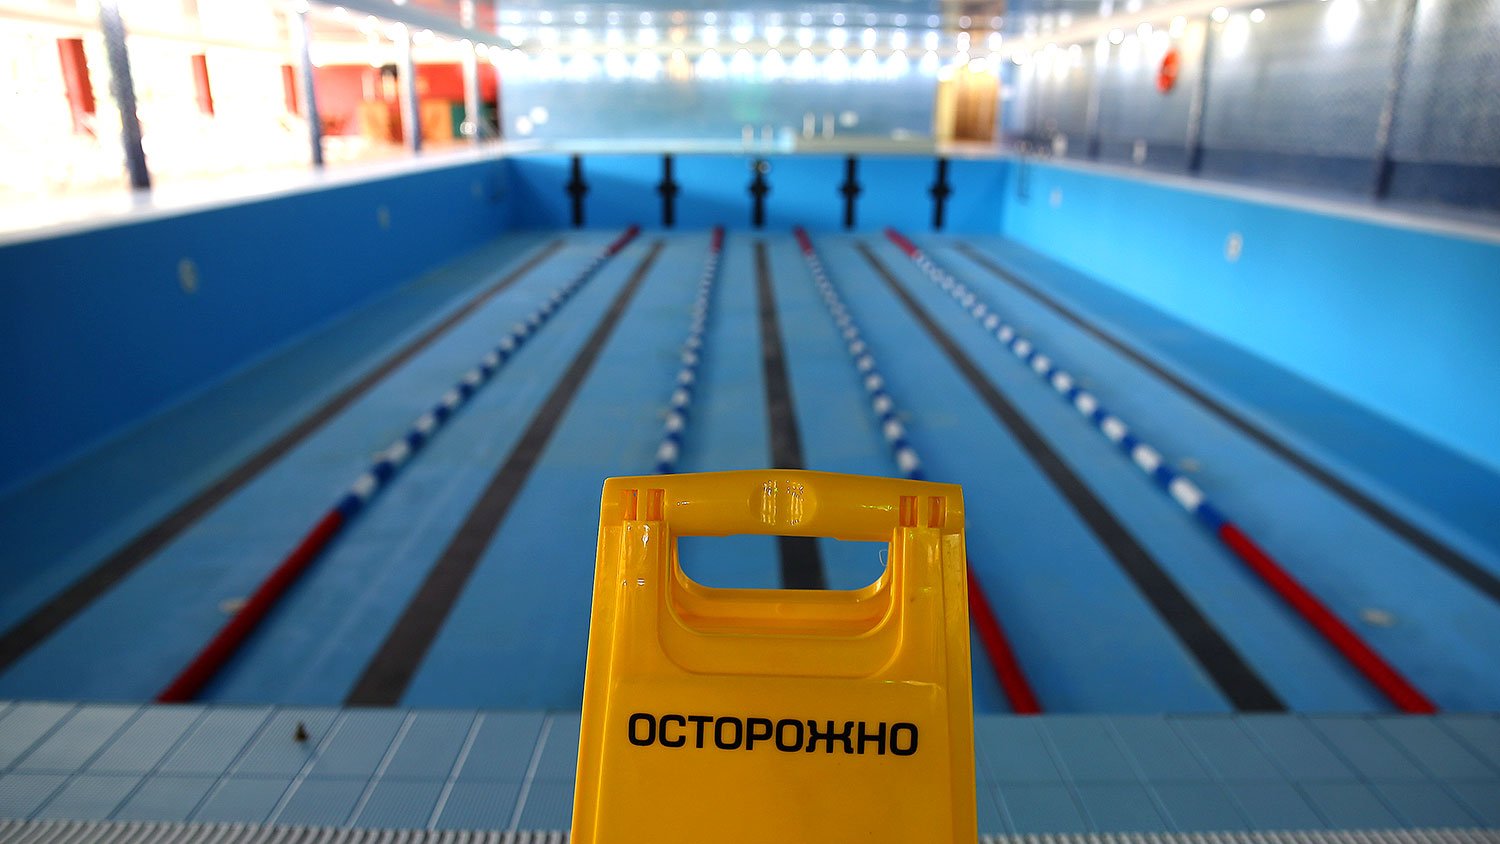 Ослабление карантина в Украине: бассейны и фитнес-центры будут работать по новым правилам - подробности